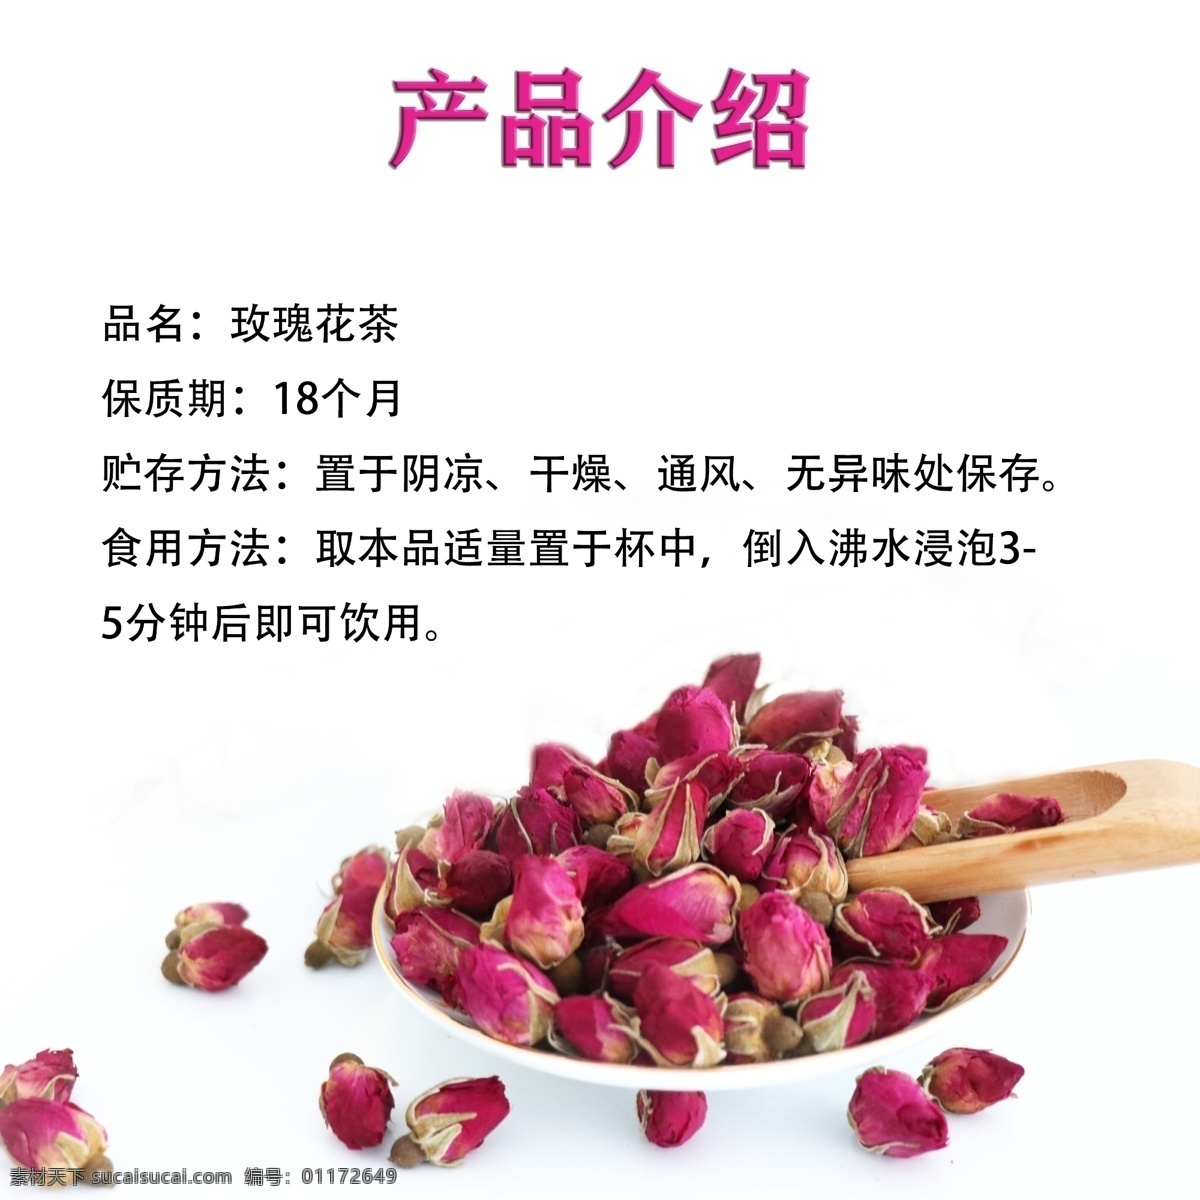 玫瑰 花茶 产品 介绍 玫瑰花茶 淘宝 花茶素材 花茶产品 淘宝界面设计